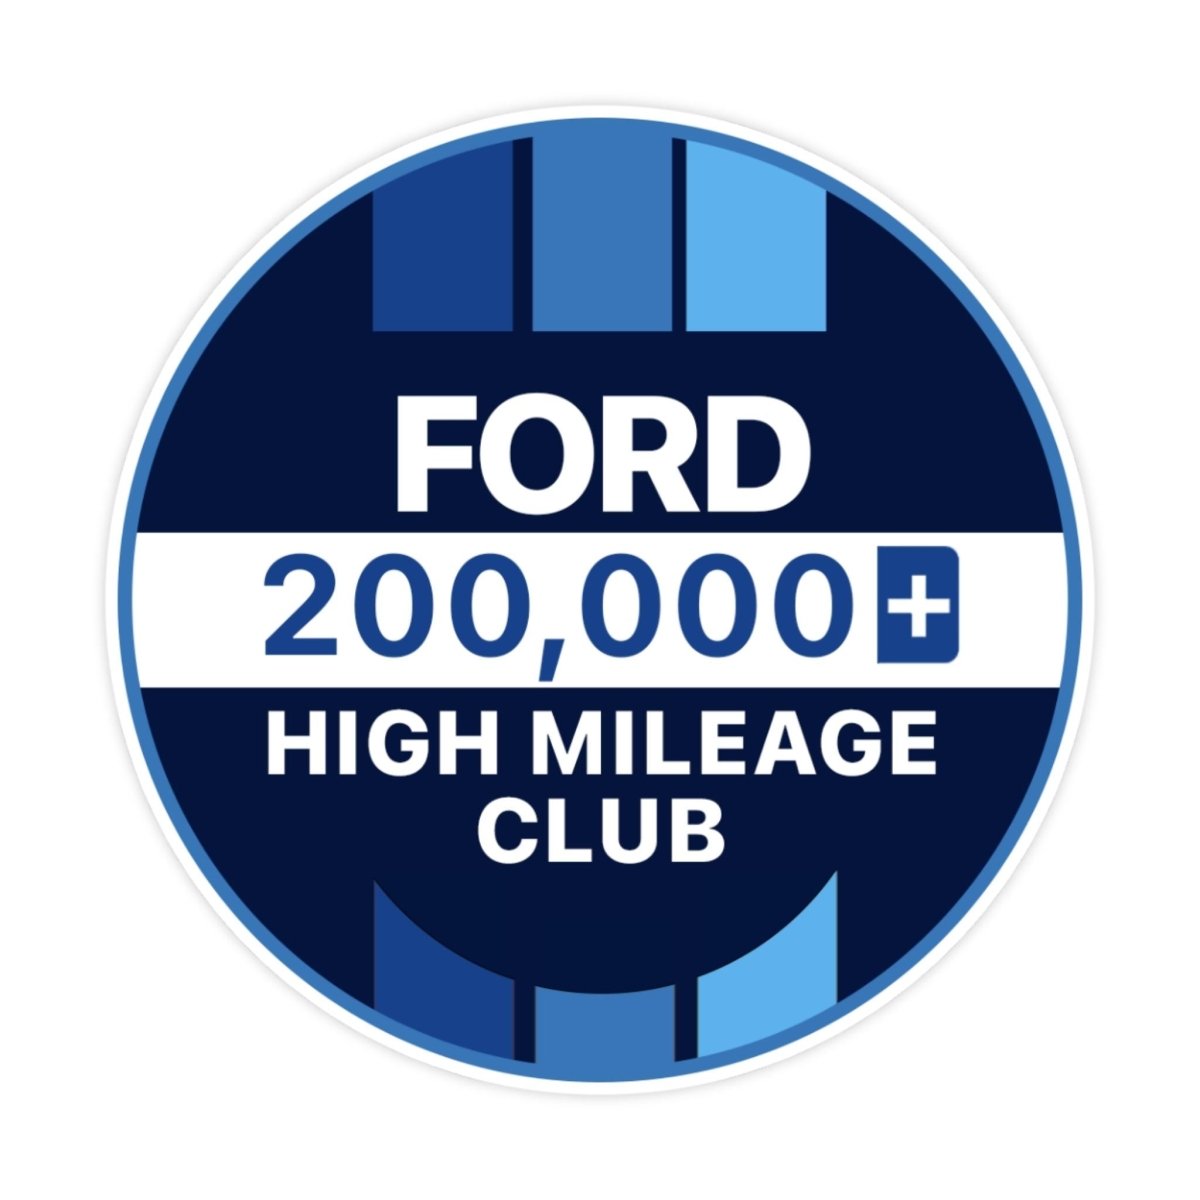 Ford 500k High Mileage Club Sticker - stickerbullFord 500k High Mileage Club StickerRetail StickerstickerbullstickerbullTaylor_Ford200k [#119]200kFord 500k High Mileage Club Sticker